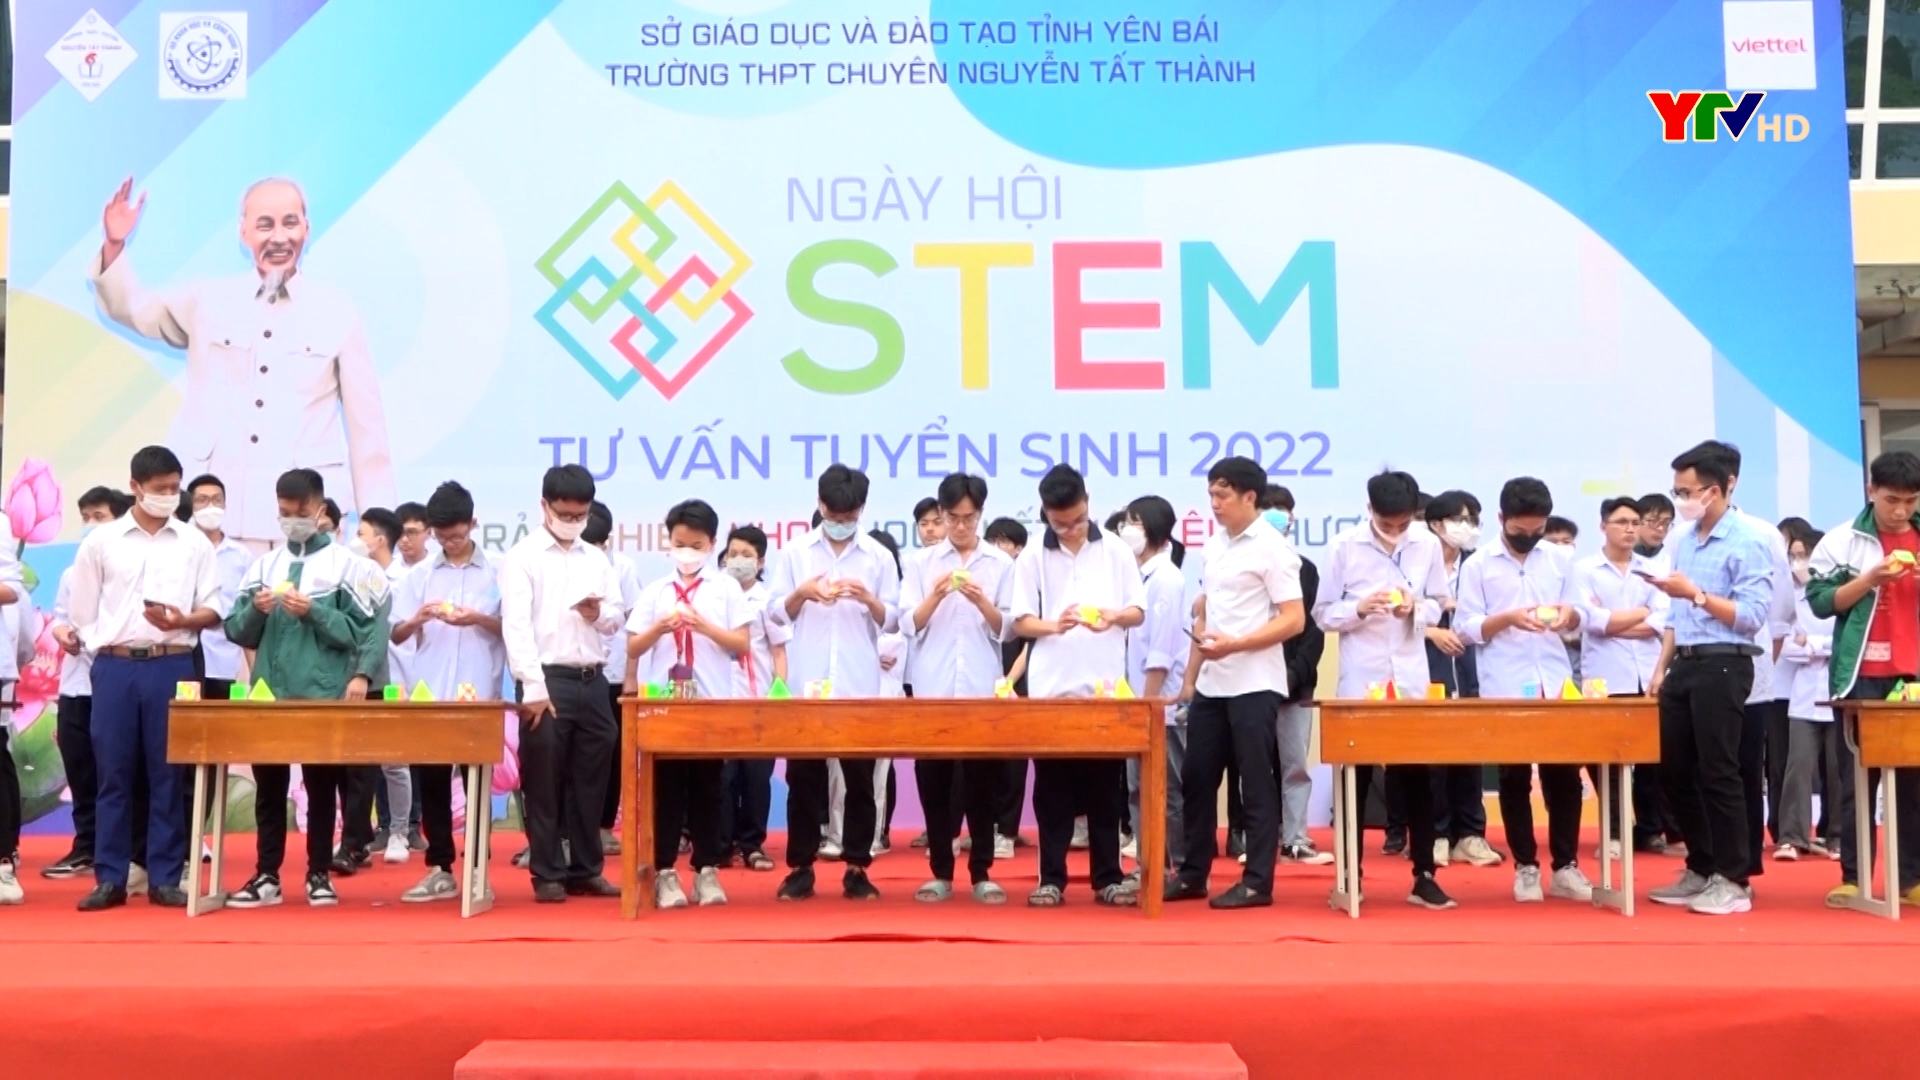 Trường THPT Chuyên Nguyễn Tất Thành tổ chức Ngày hội STEM năm 2022